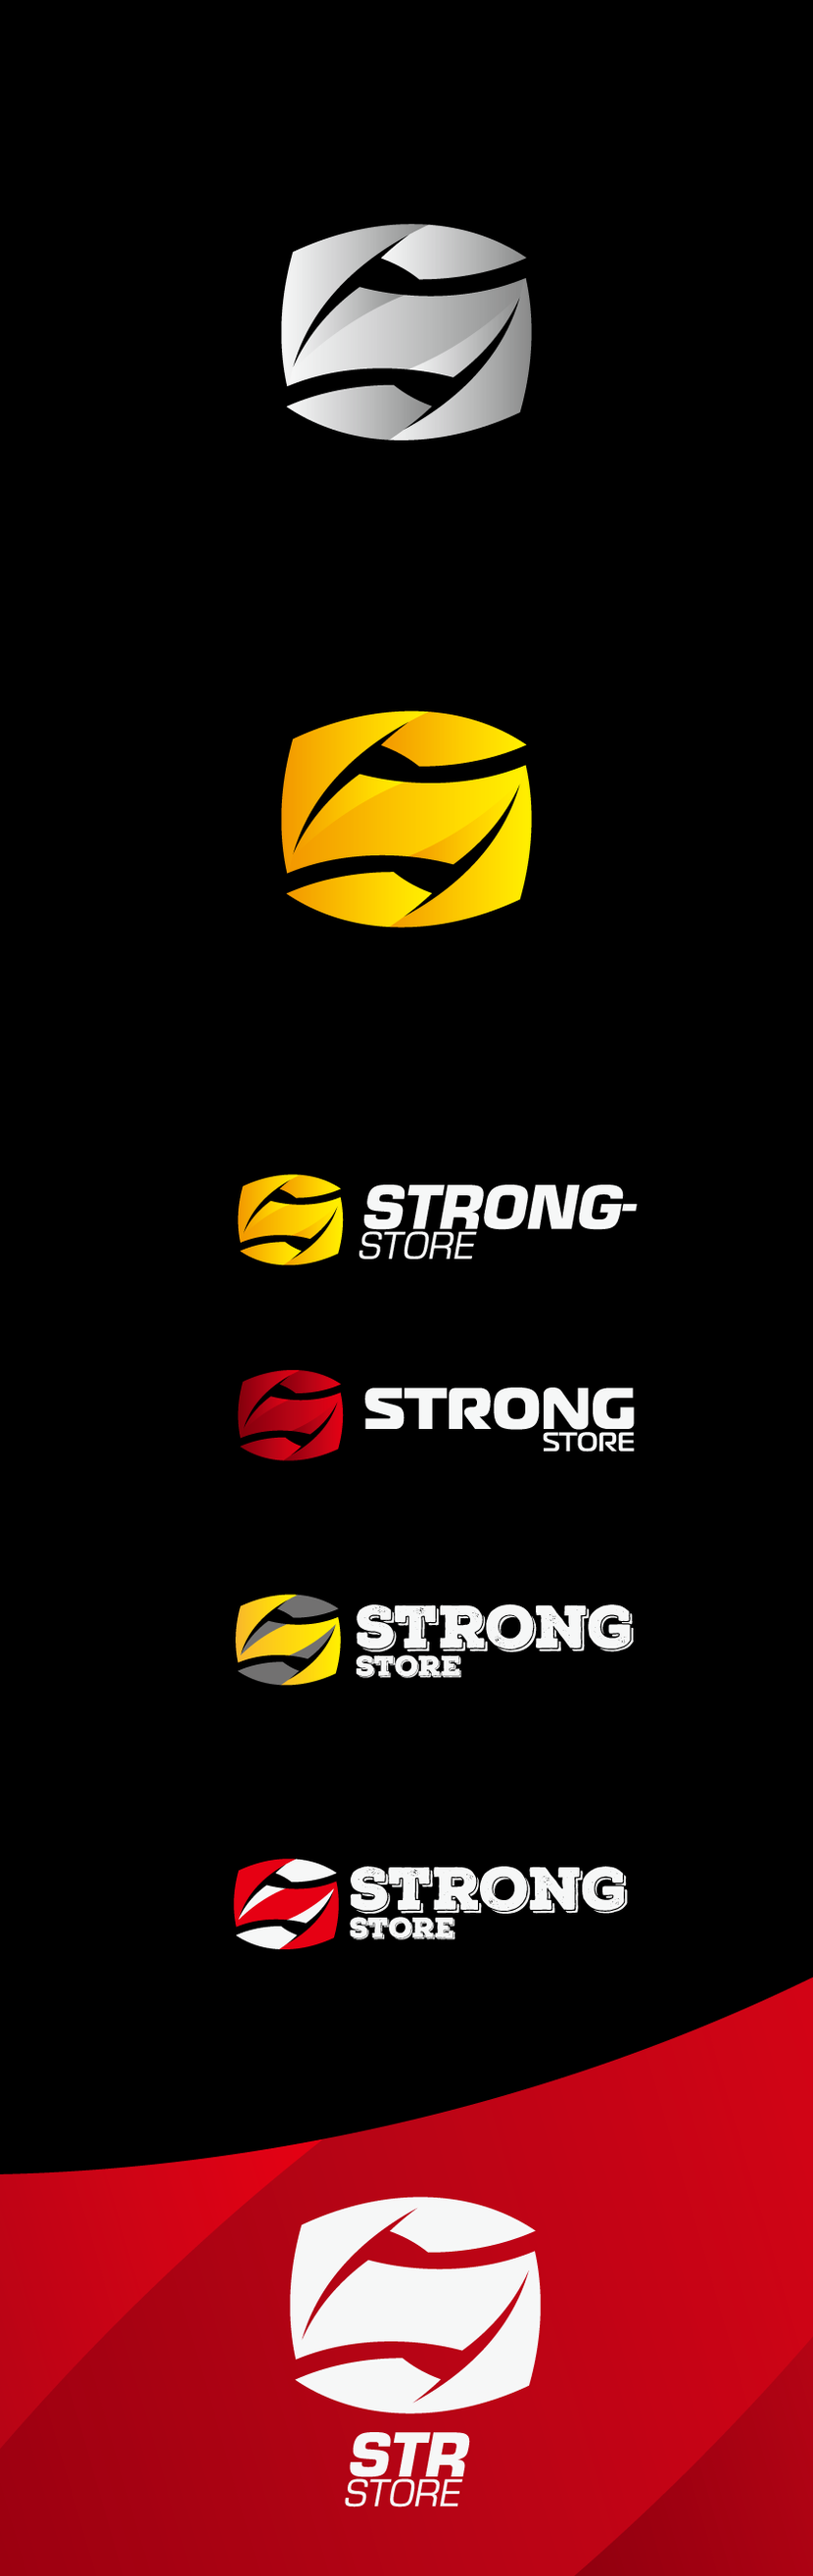 Динамичный, немного агрессивный, спортивный логотип, действительно олицетворяющий силу. Стилизованная буква S с резкими гранями горизонтально симметрично, так что логотип читается и вверх-ногами. Может принимать различные цветовые схемы: во многих смотрится отлично. Яркие желтые и красные оттенки лучше ассоциируются с активностью и спортом, поэтому есть варианты в таких расцветках. Также лого отлично смотрится и в чб и в монохроме, хорошо подойдет как фавиконка. Также я подготовил 3 различных шрифтовых написания названия на выбор, но можно определиться с направлением и доработать, если что-то не совсем устраивает. Также предлагаю сокращенное написание STRstore для размещения в ограниченном пространстве (но это уже больше относится к вариантам использования лого в фирмстиле) Спасибо! - Логотип для магазина экипировки для единоборств и спортивной одежды